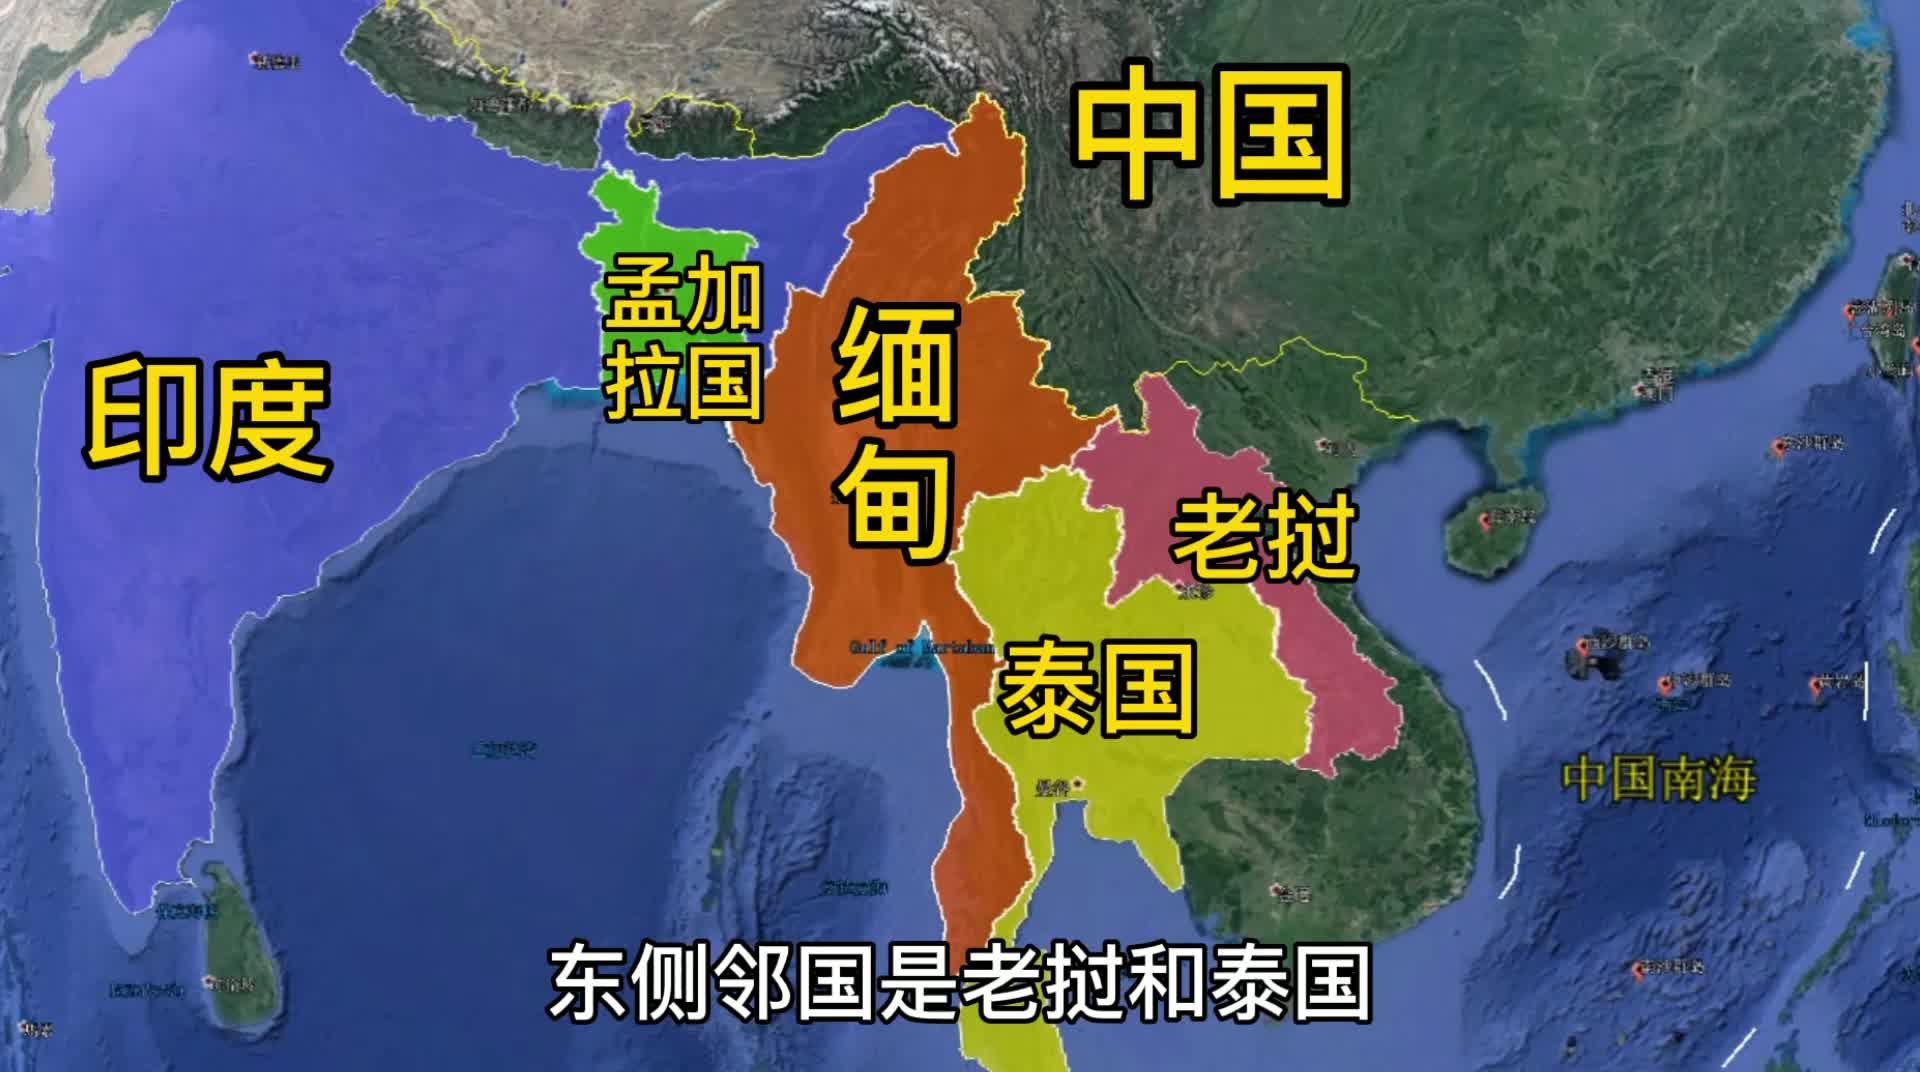 缅泰,缅老国境线长分别为1799公里和238公里;地理位置缅甸西部